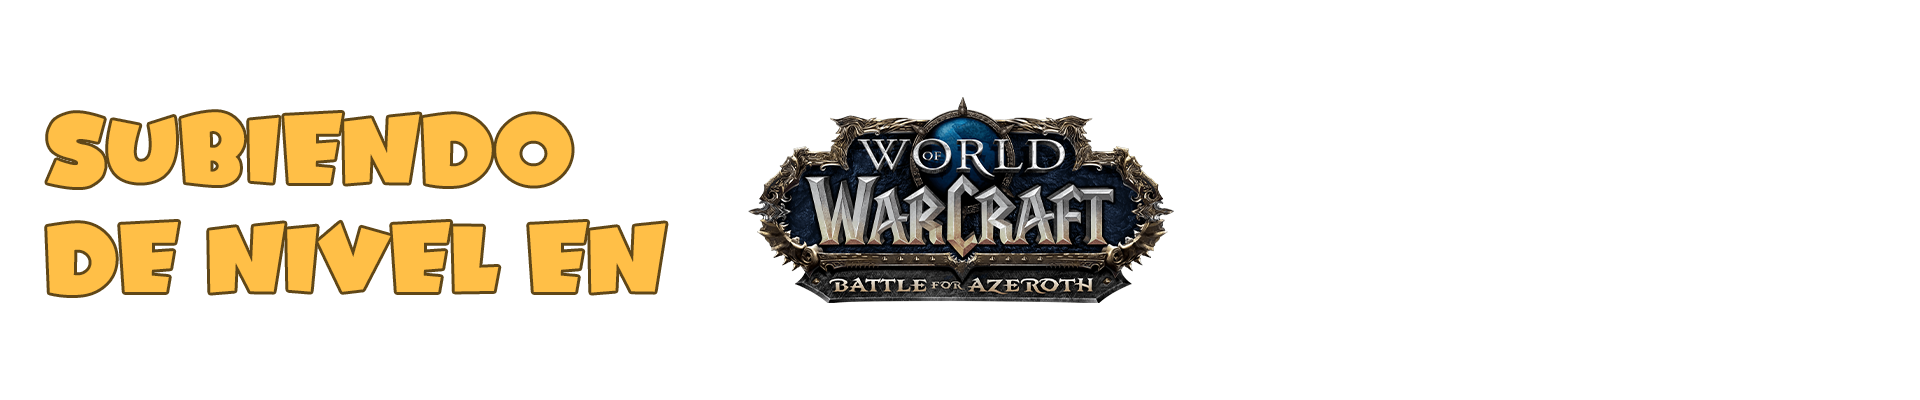 Subiendo de Nivel en World of Warcraft Batle for Azeroth